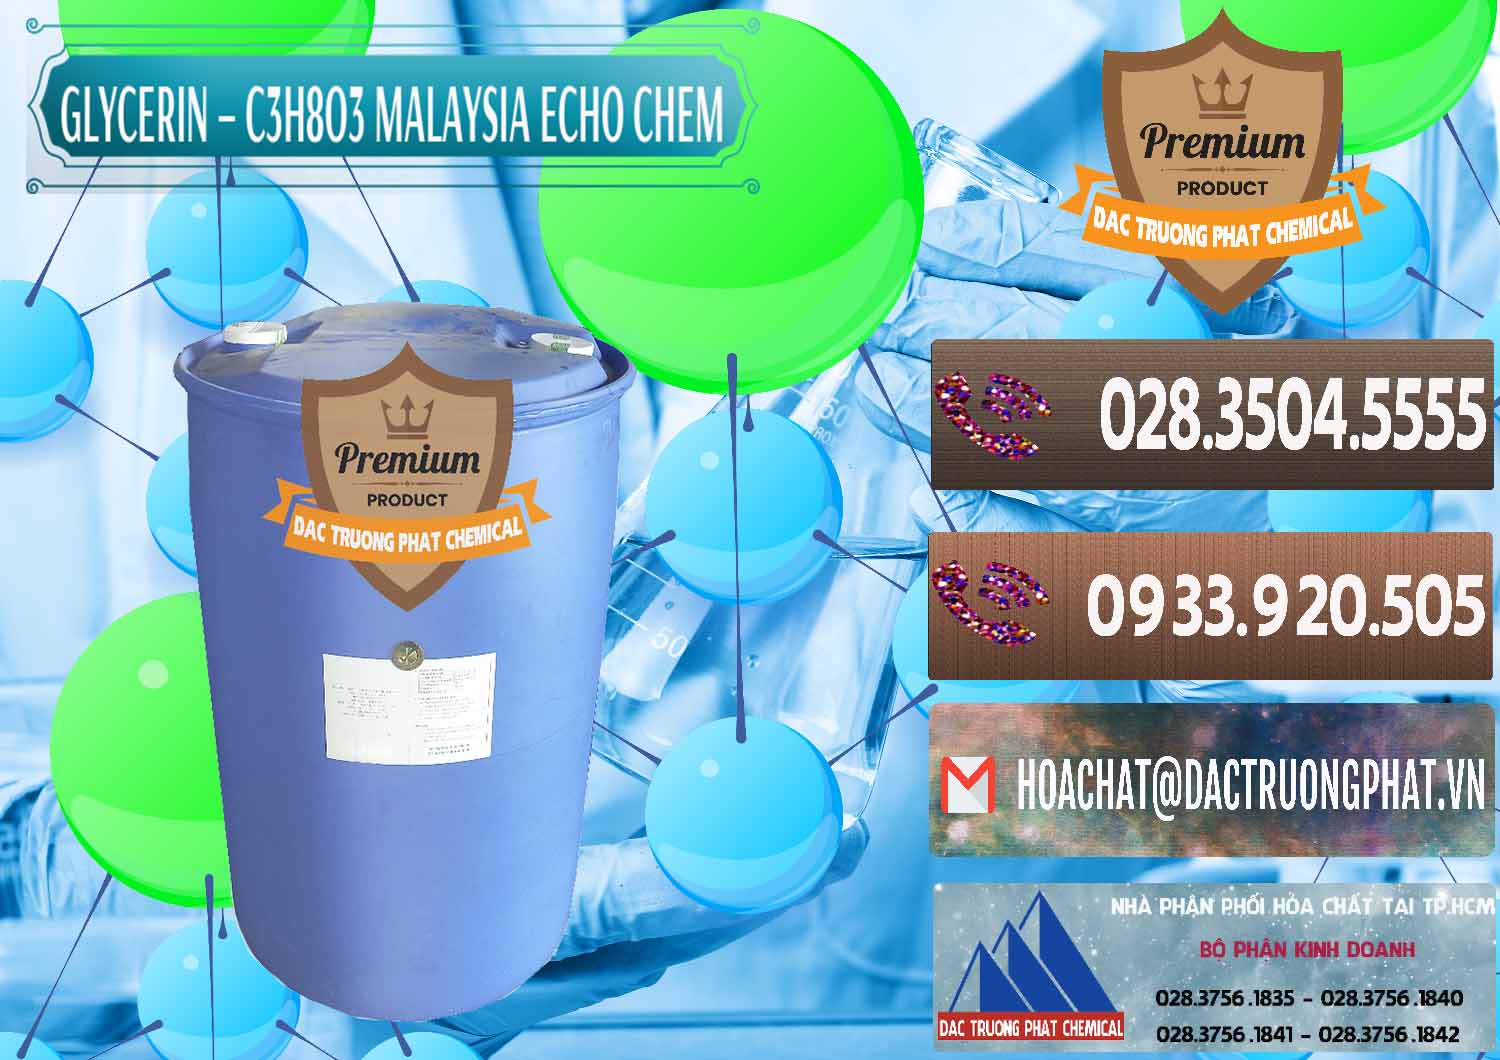 Chuyên kinh doanh và bán Glycerin – C3H8O3 99.7% Echo Chem Malaysia - 0273 - Chuyên cung cấp ( phân phối ) hóa chất tại TP.HCM - hoachatviet.net